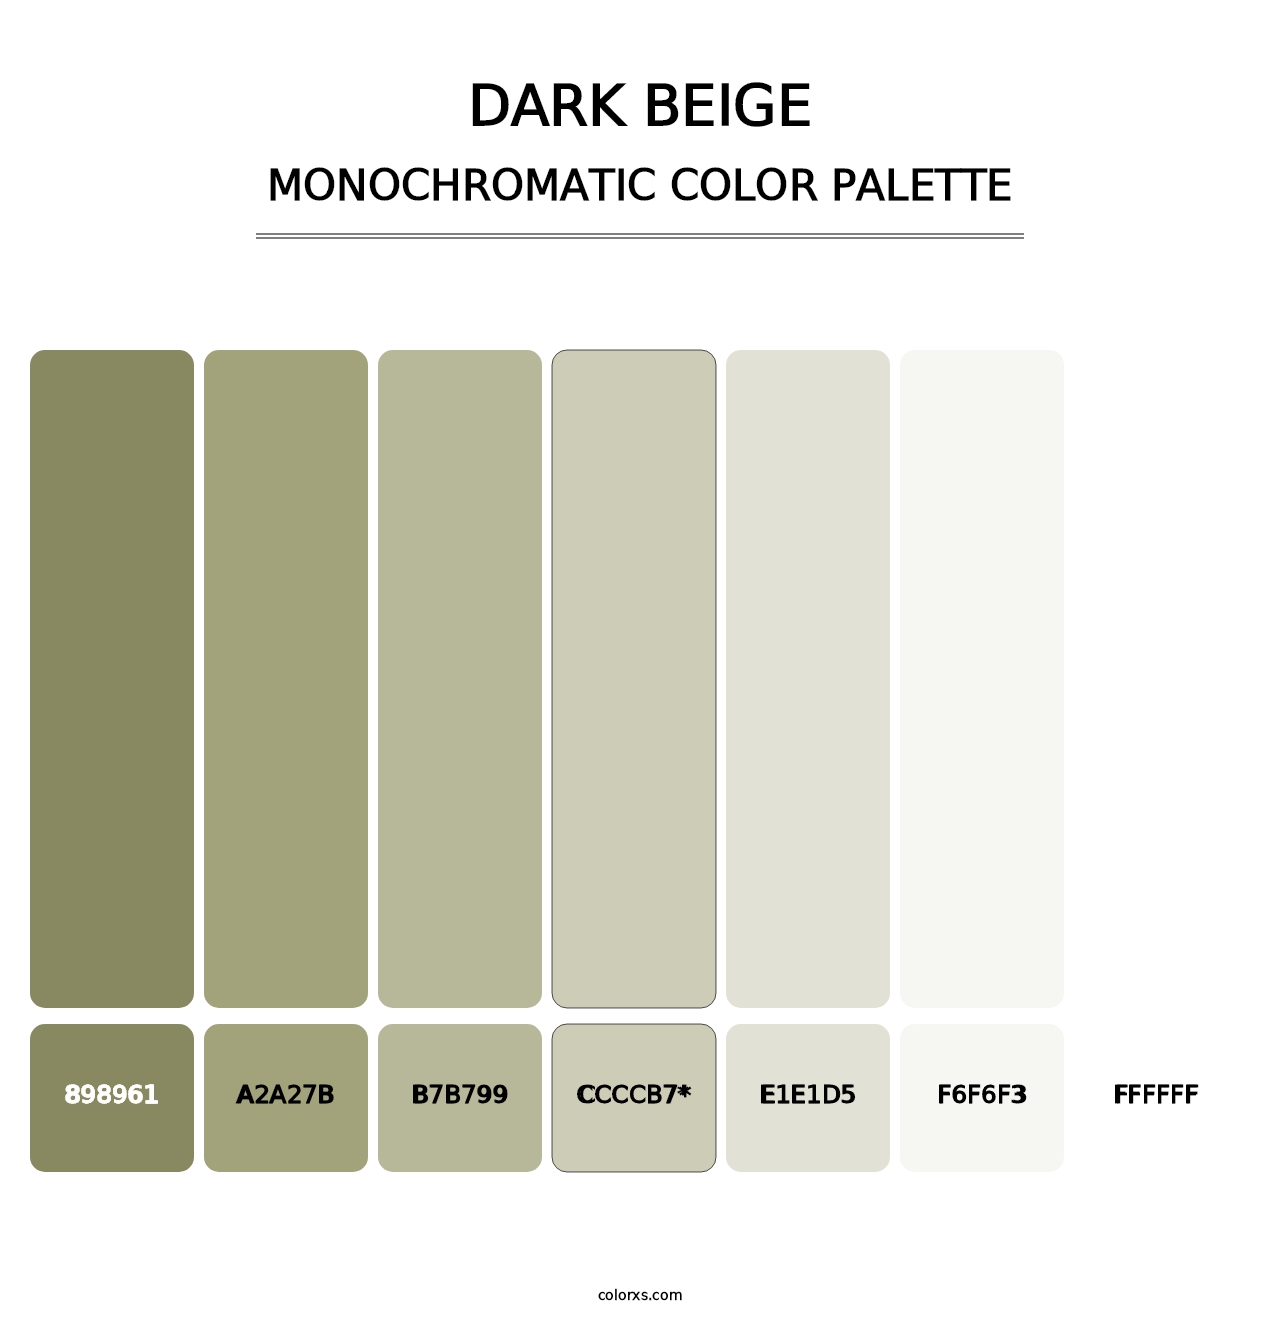 Dark Beige - Monochromatic Color Palette